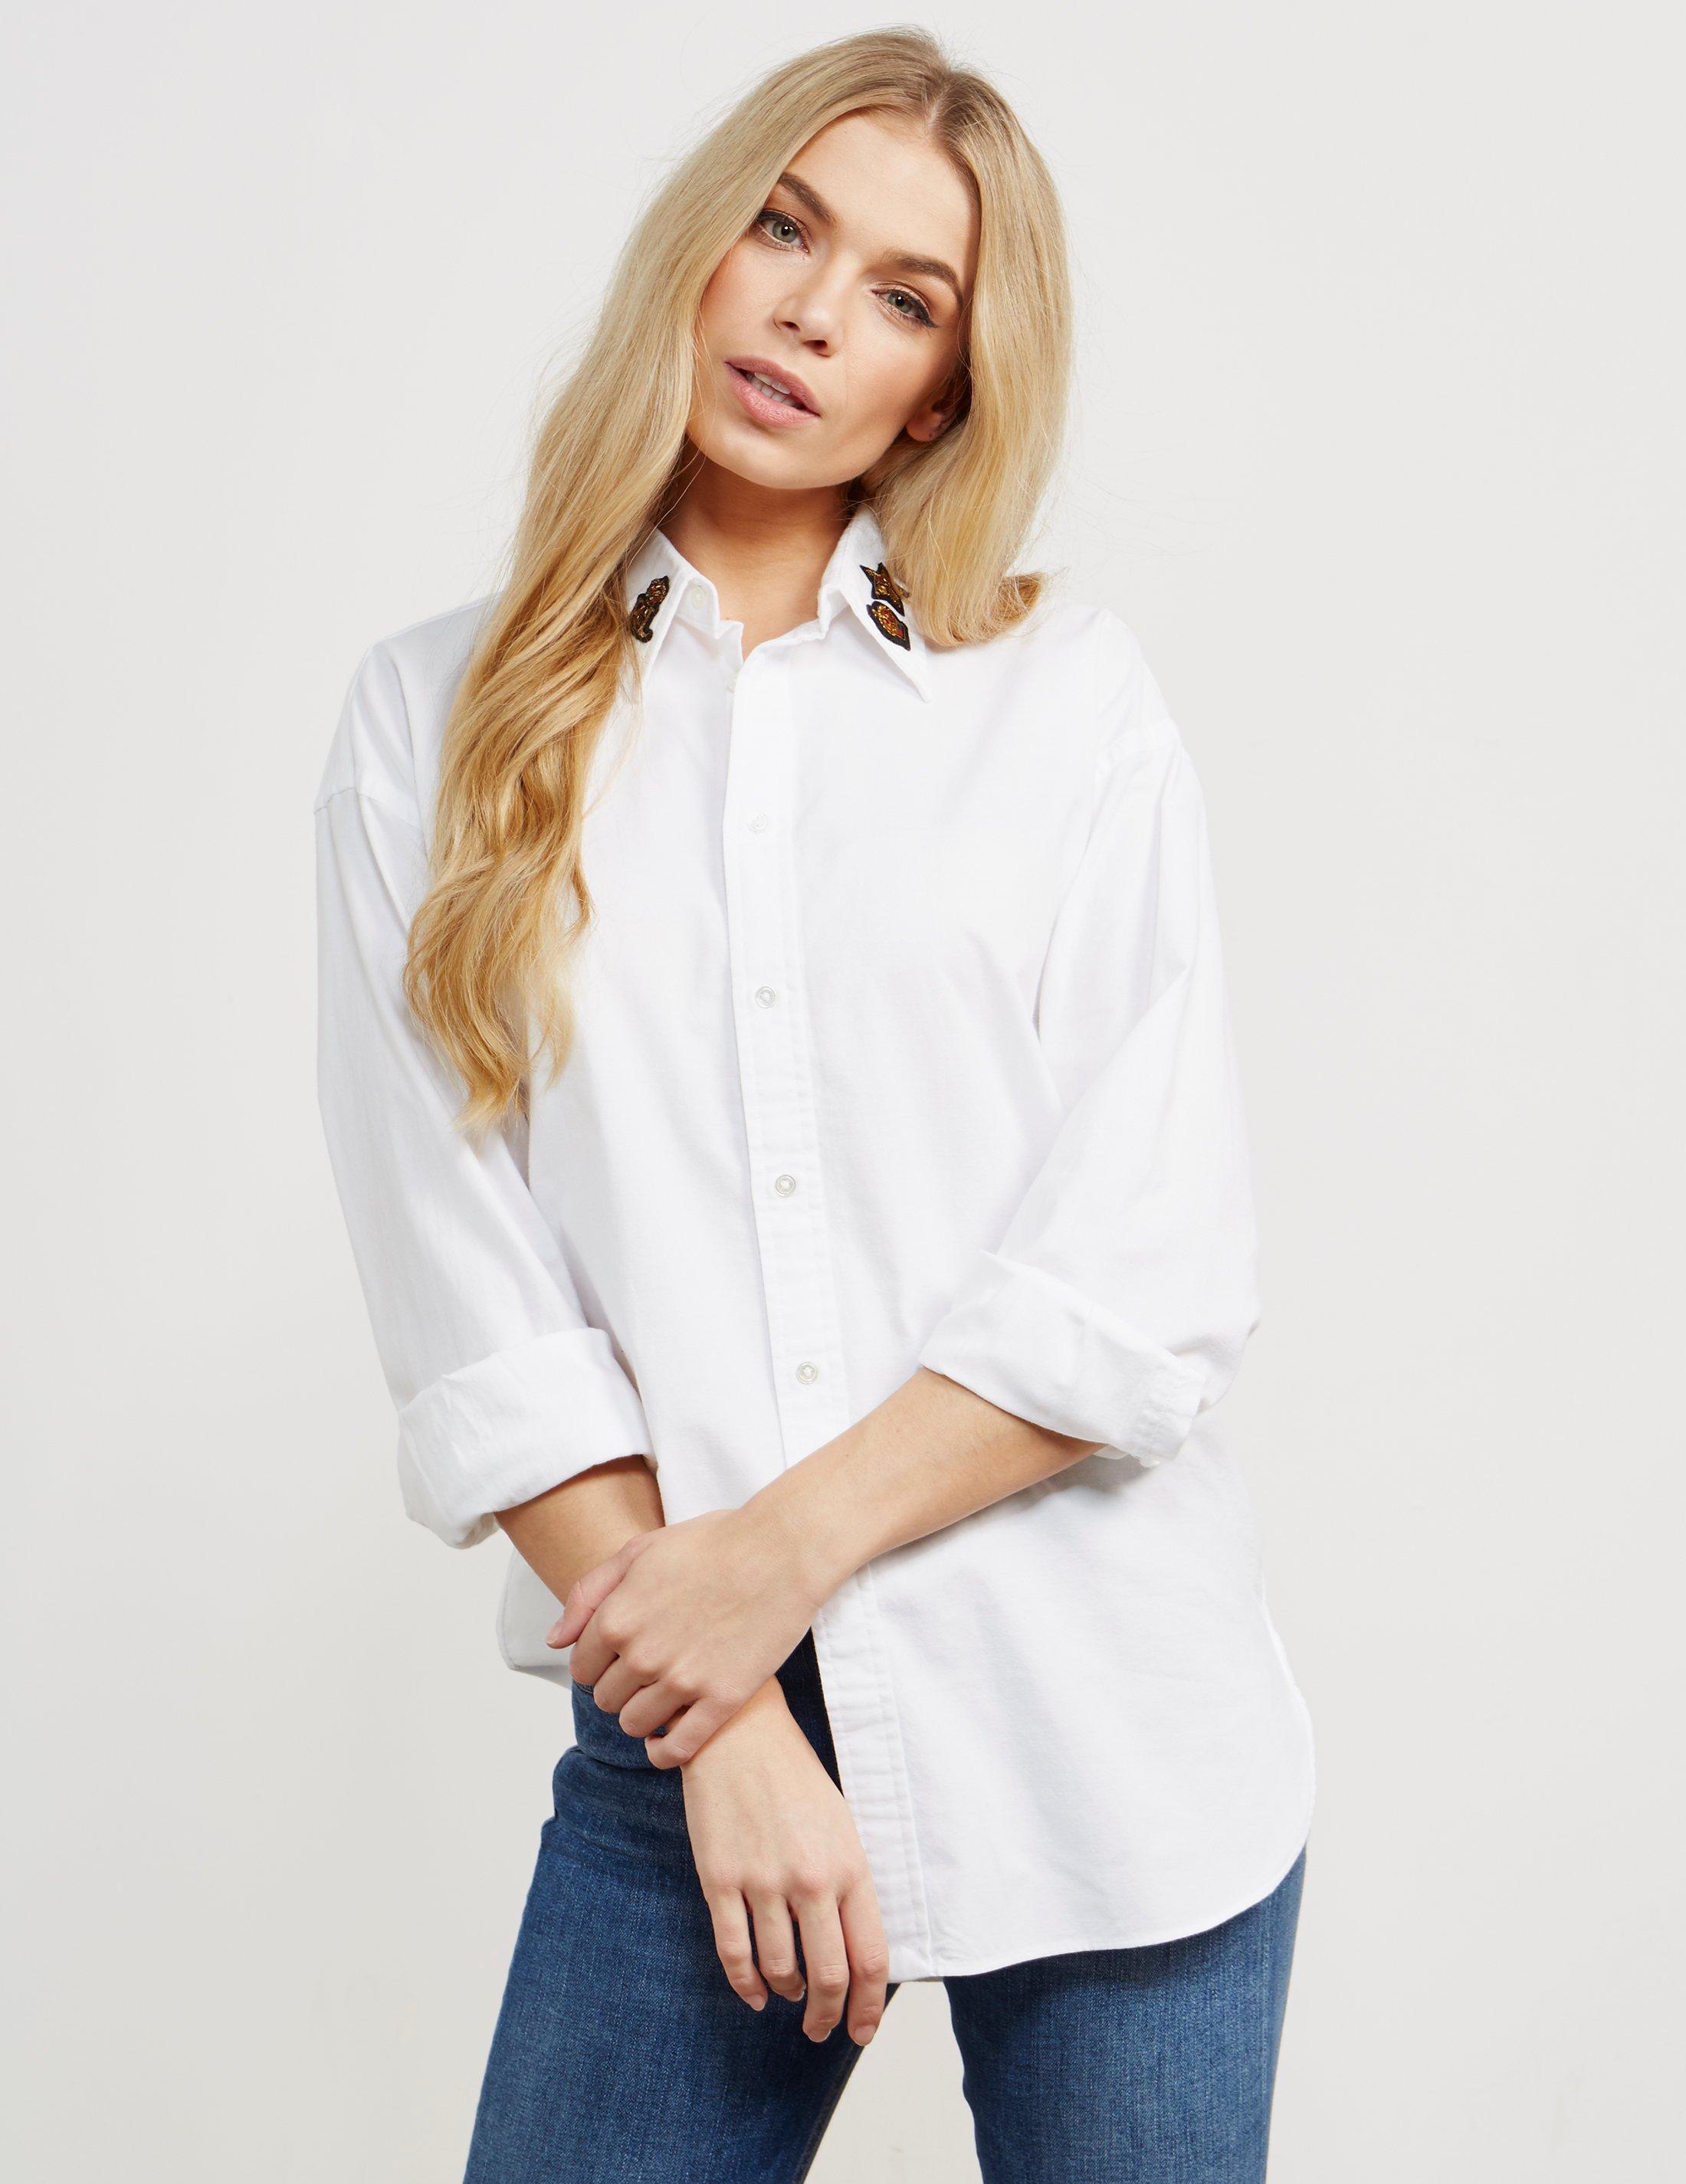 Polo Ralph Lauren Ellen Badge Long Sleeve Shirt White in White - Lyst